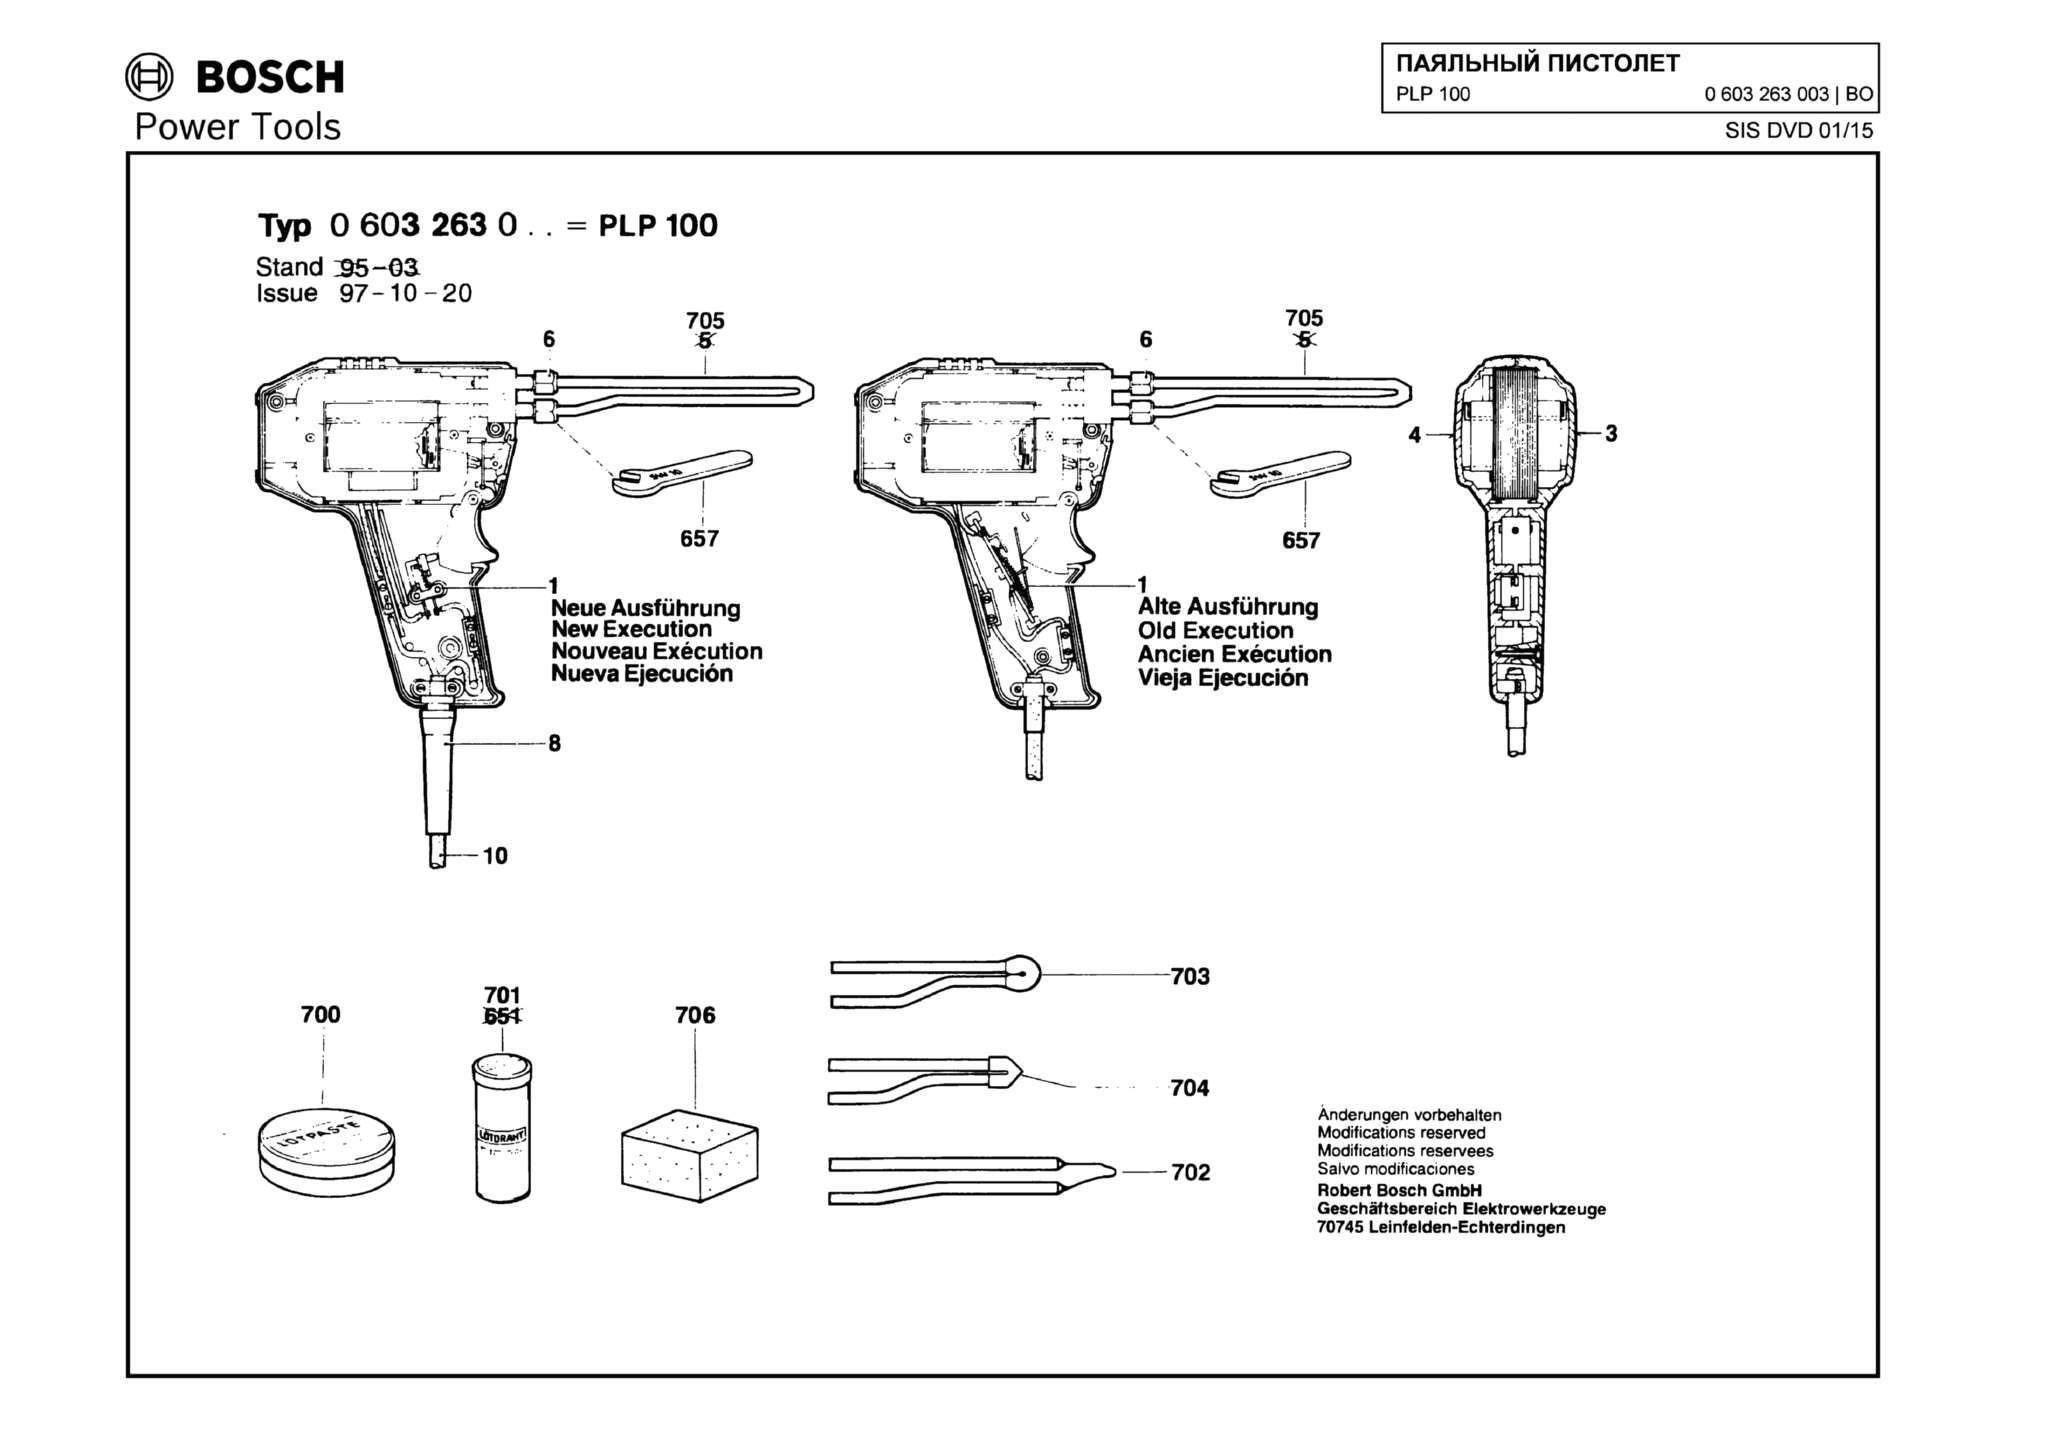 Запчасти, схема и деталировка Bosch PLP 100 (ТИП 0603263003)